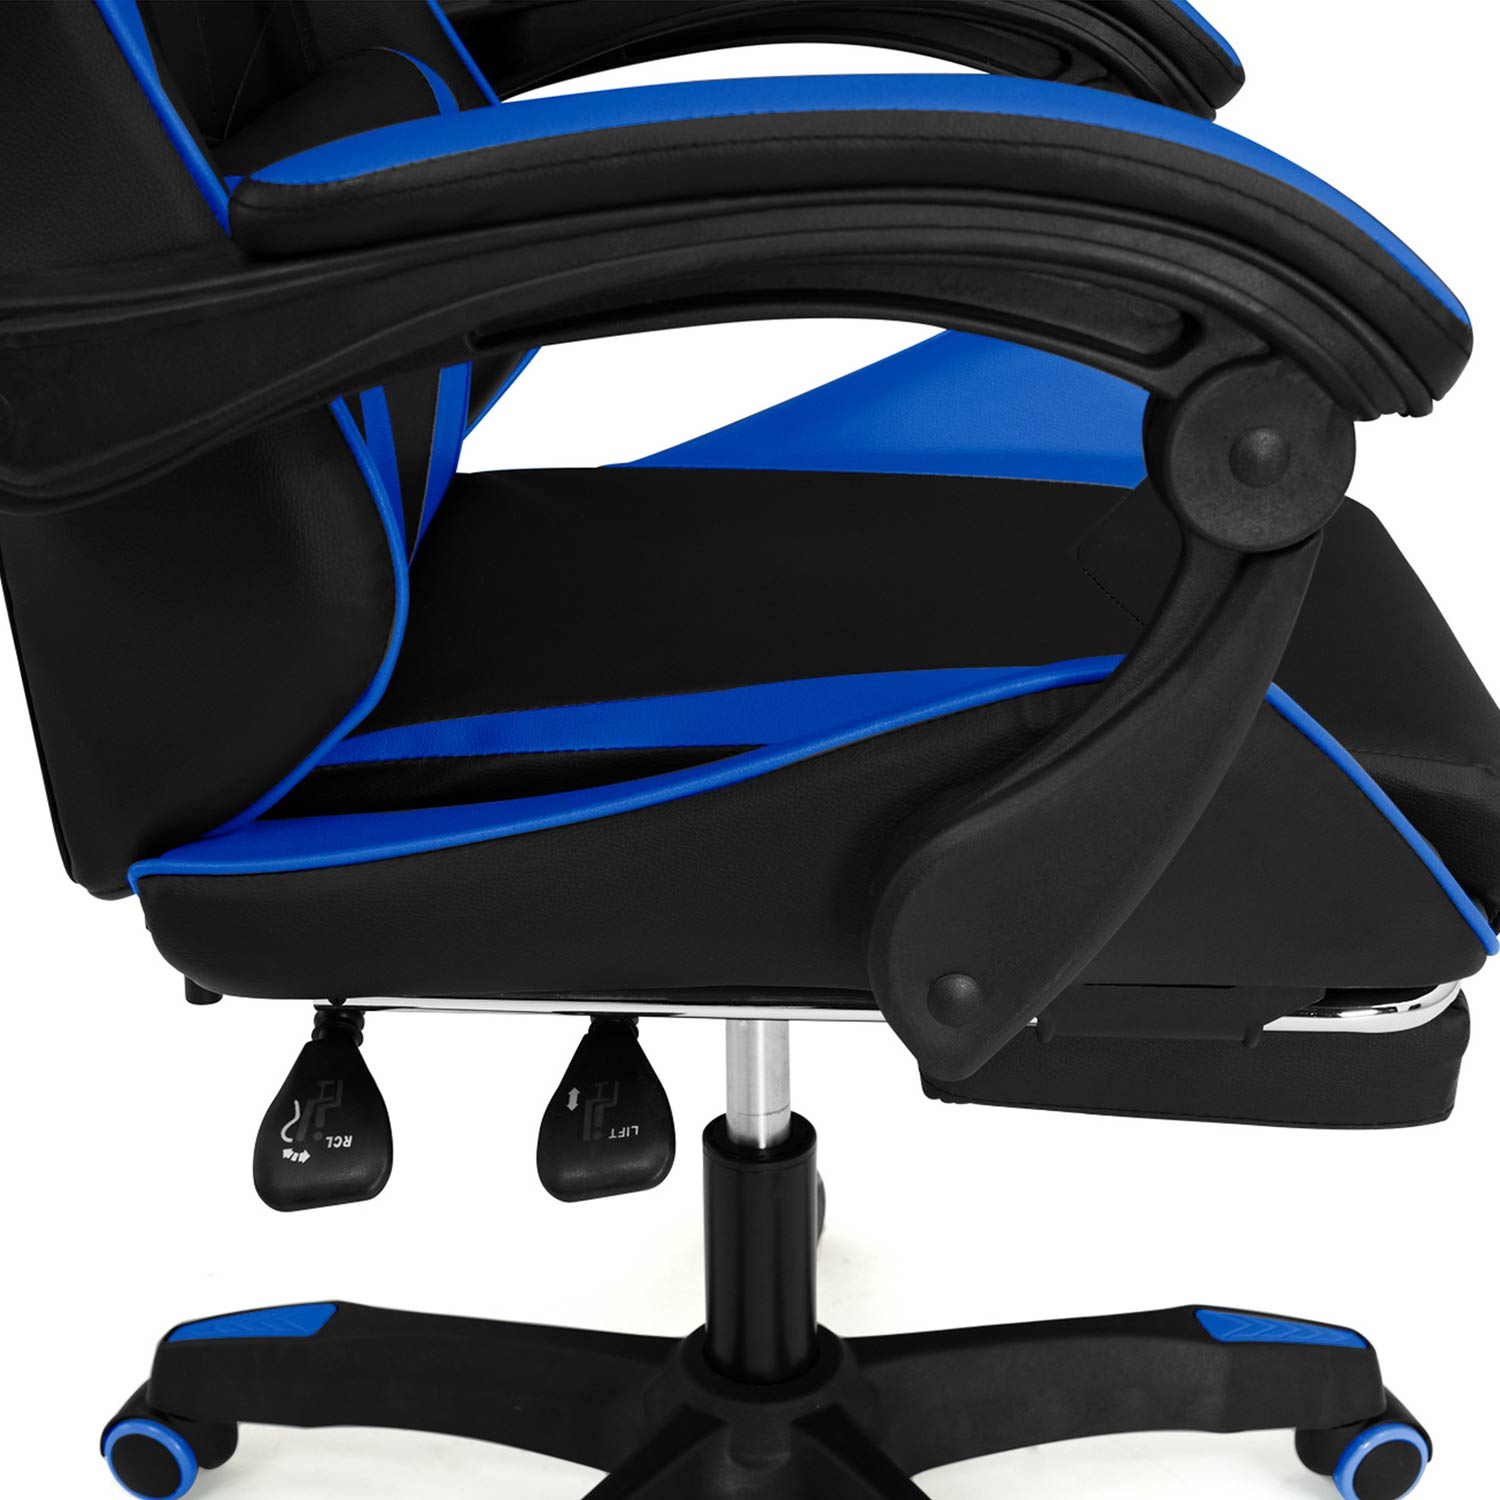 Game Chair Thomas Junior - Chaise de bureau Gaming Style - Réglable en  hauteur - Bleu noir